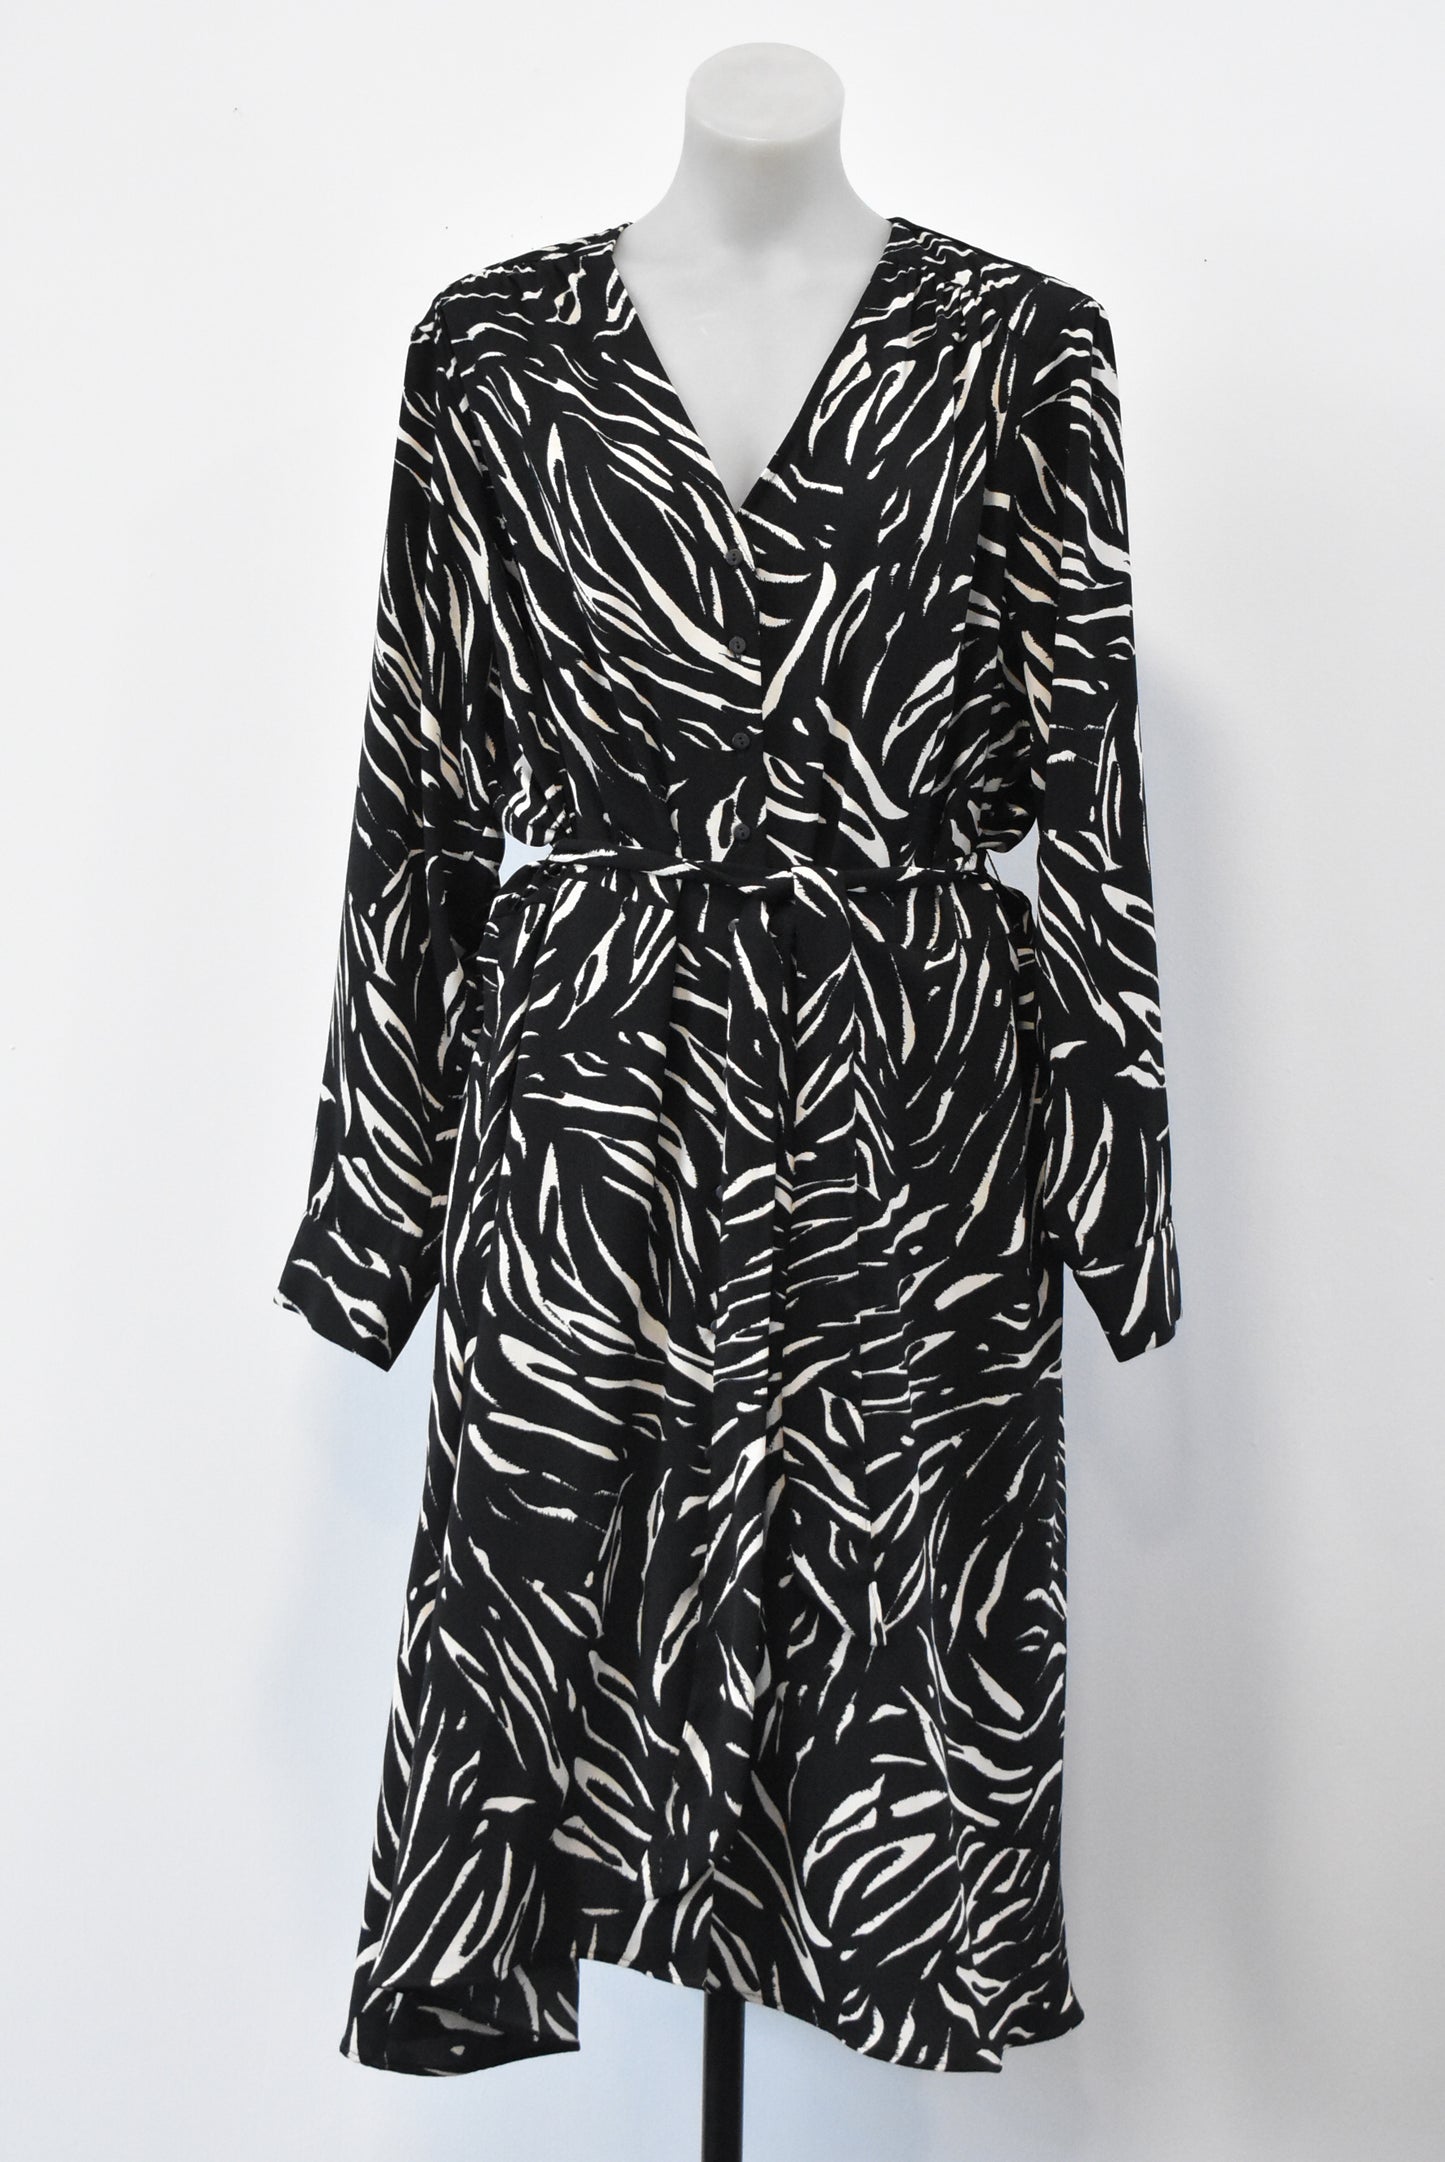 M&S zebra button-up dress, 24